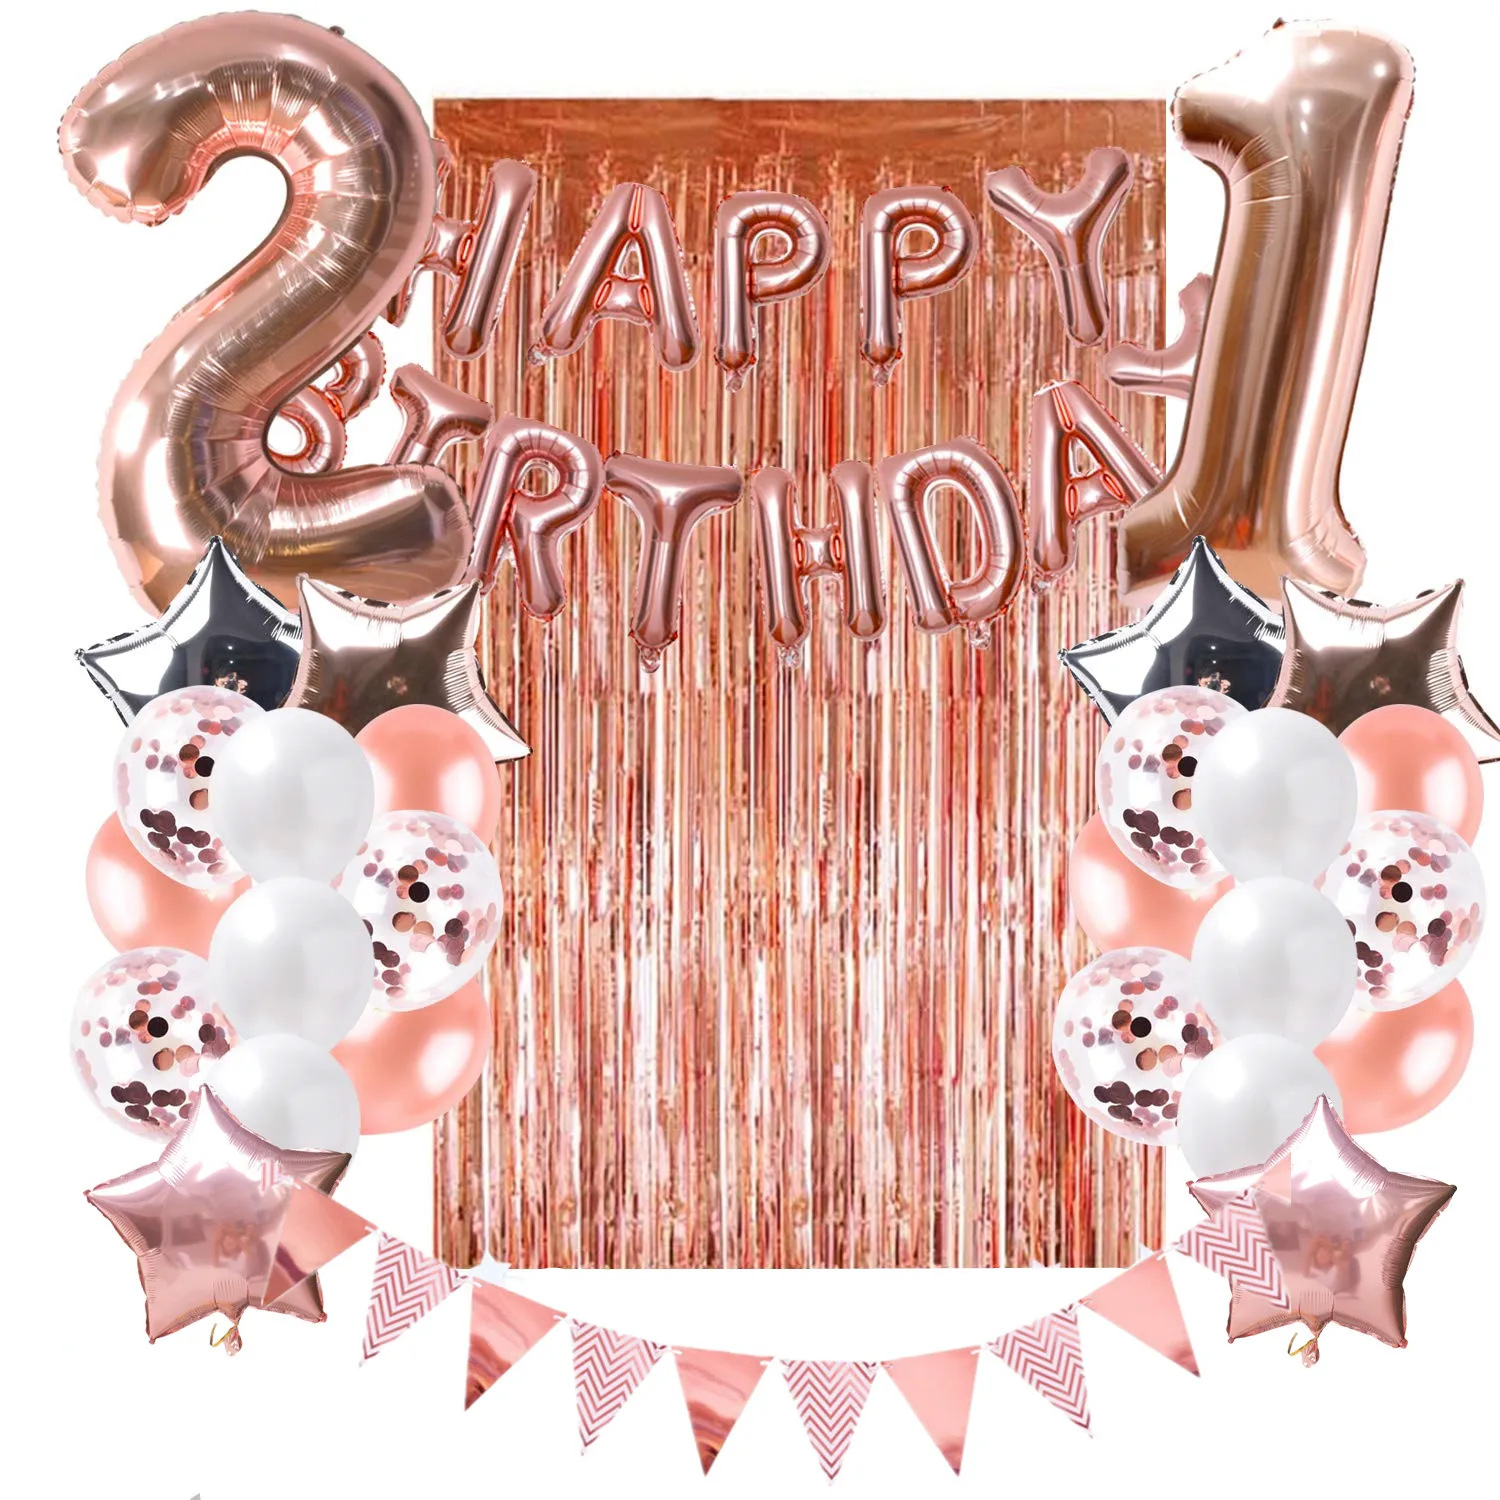 ZLJQ 21 день рождения украшения розовые и золотые воздушные шары настольная дорожка с днем рождения баннер 21 Взрослый День Рождения Декор фотографии реквизит